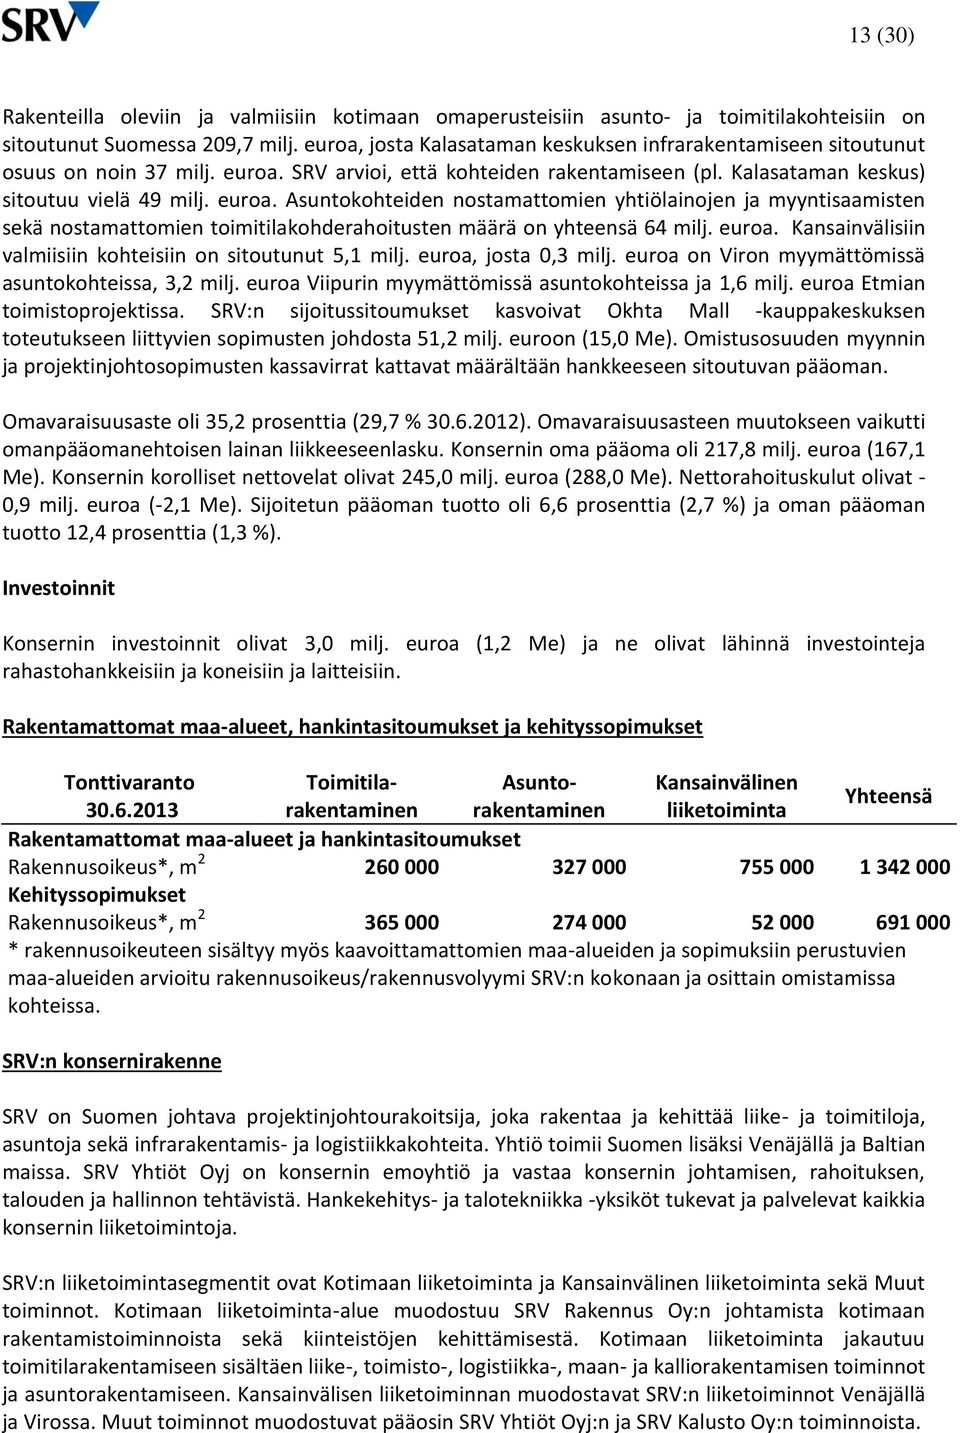 SRV arvioi, että kohteiden rakentamiseen (pl. Kalasataman keskus) sitoutuu vielä 49 milj. euroa.